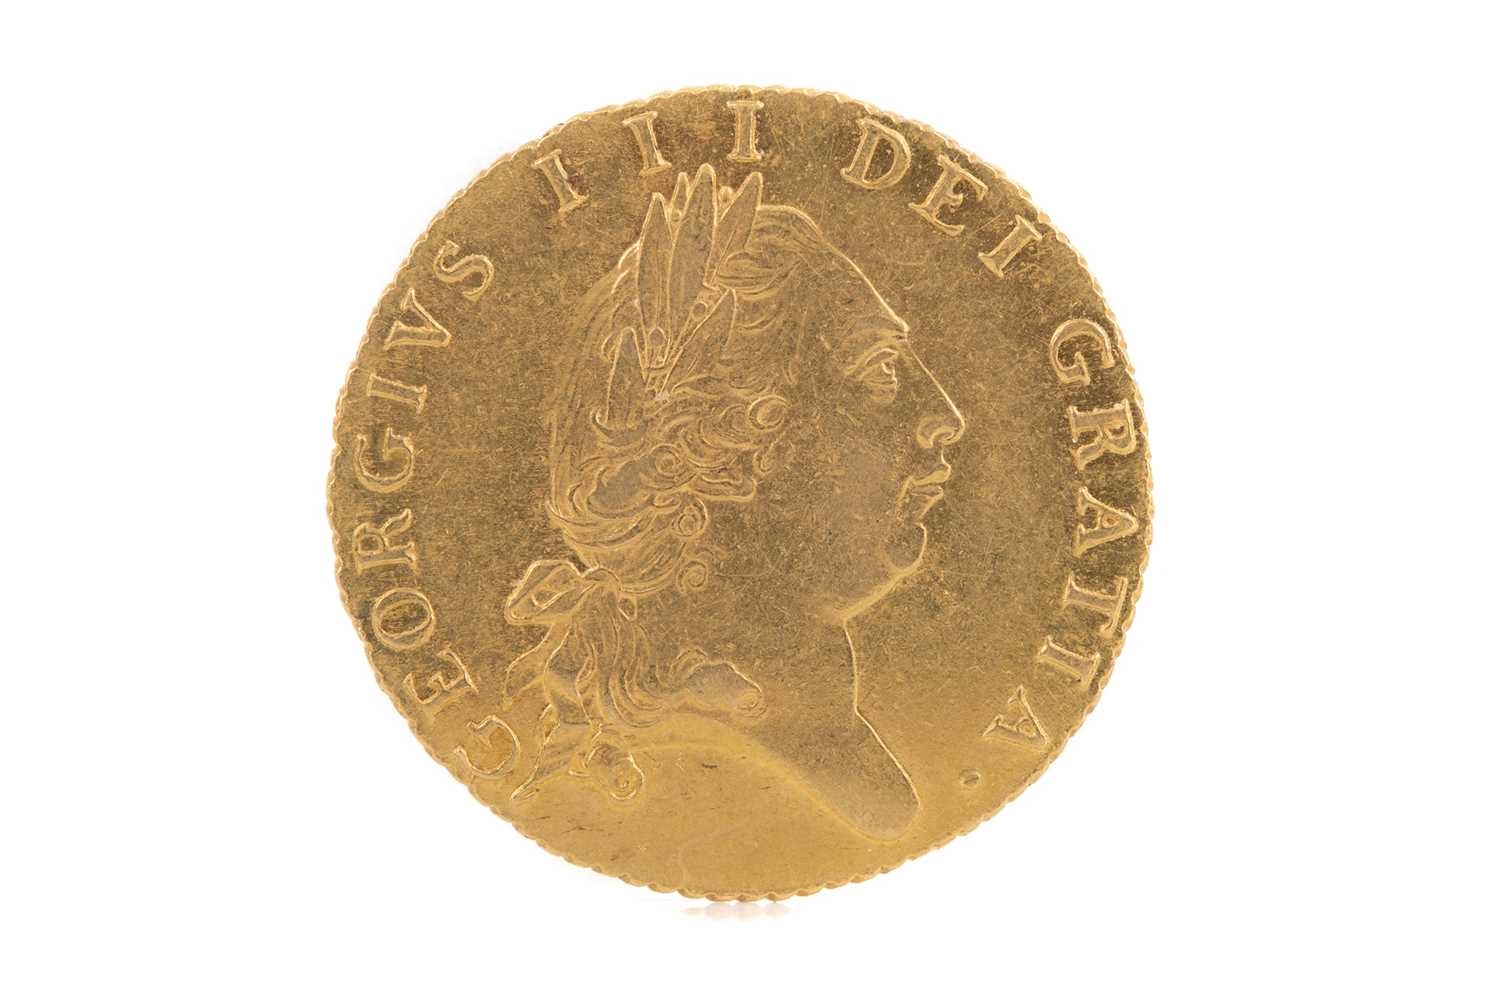 Lot 41 - A GEORGE III HALF SPADE GUINEA DATED 1790